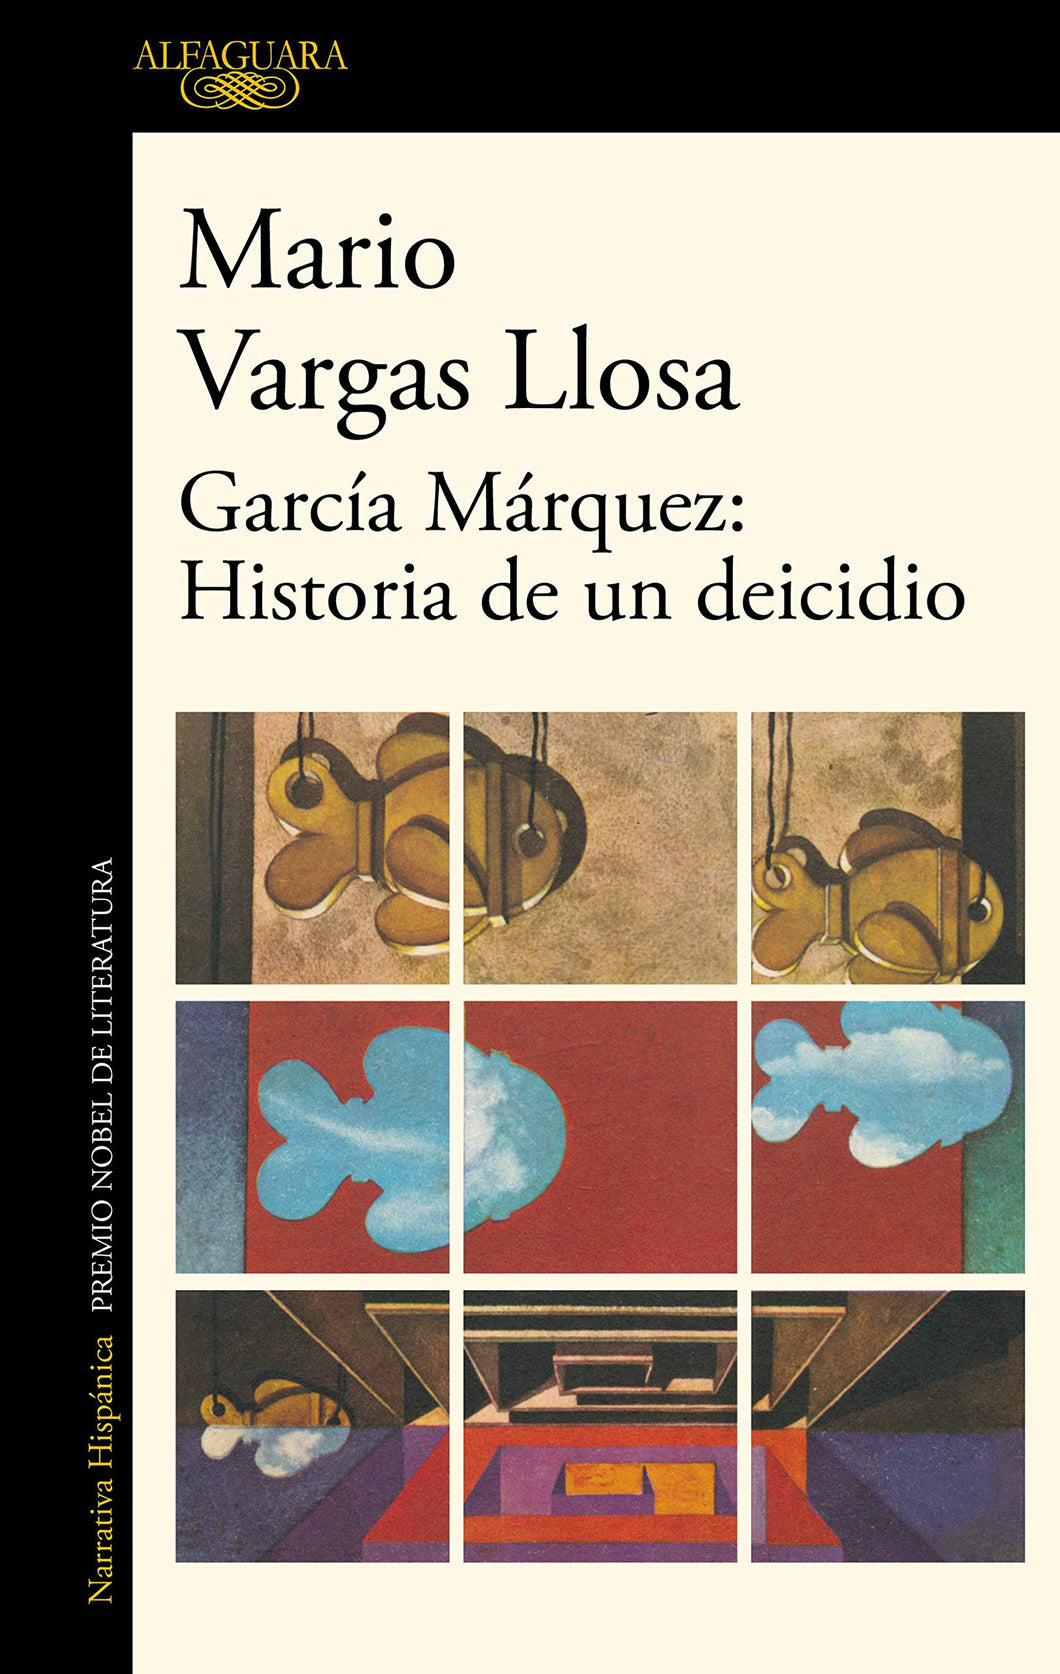 GARCÍA MÁRQUEZ: HISTORIA DE UN DEICIDIO - Mario Vargas Llosa